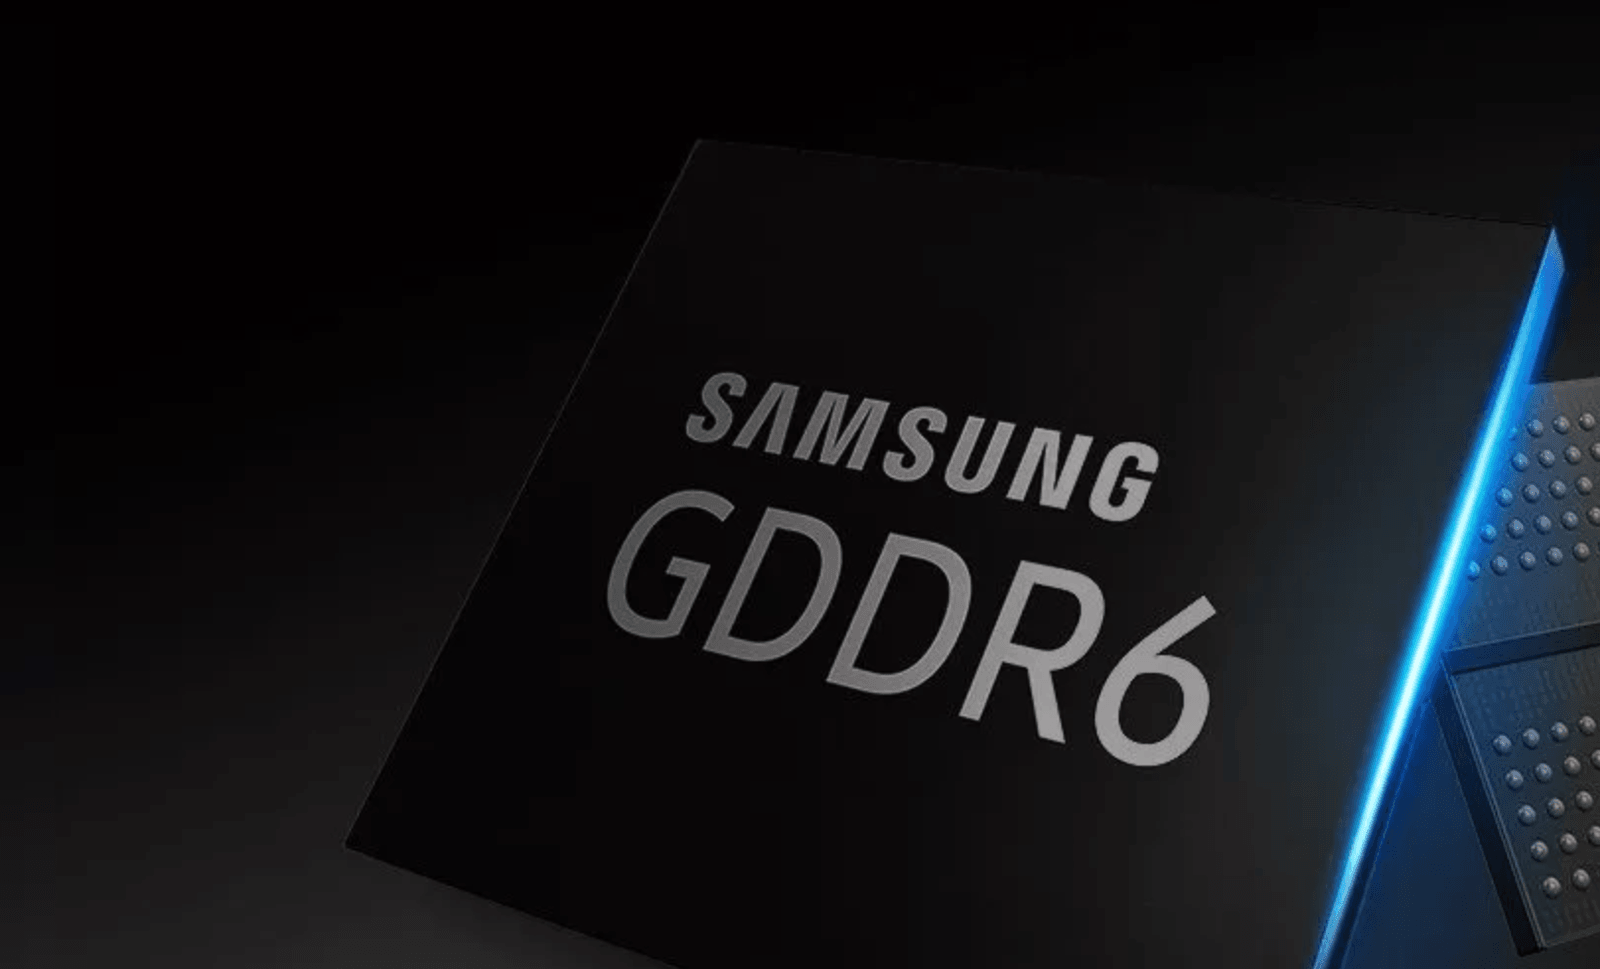 Wydajniejsze GDDR6 Samsunga